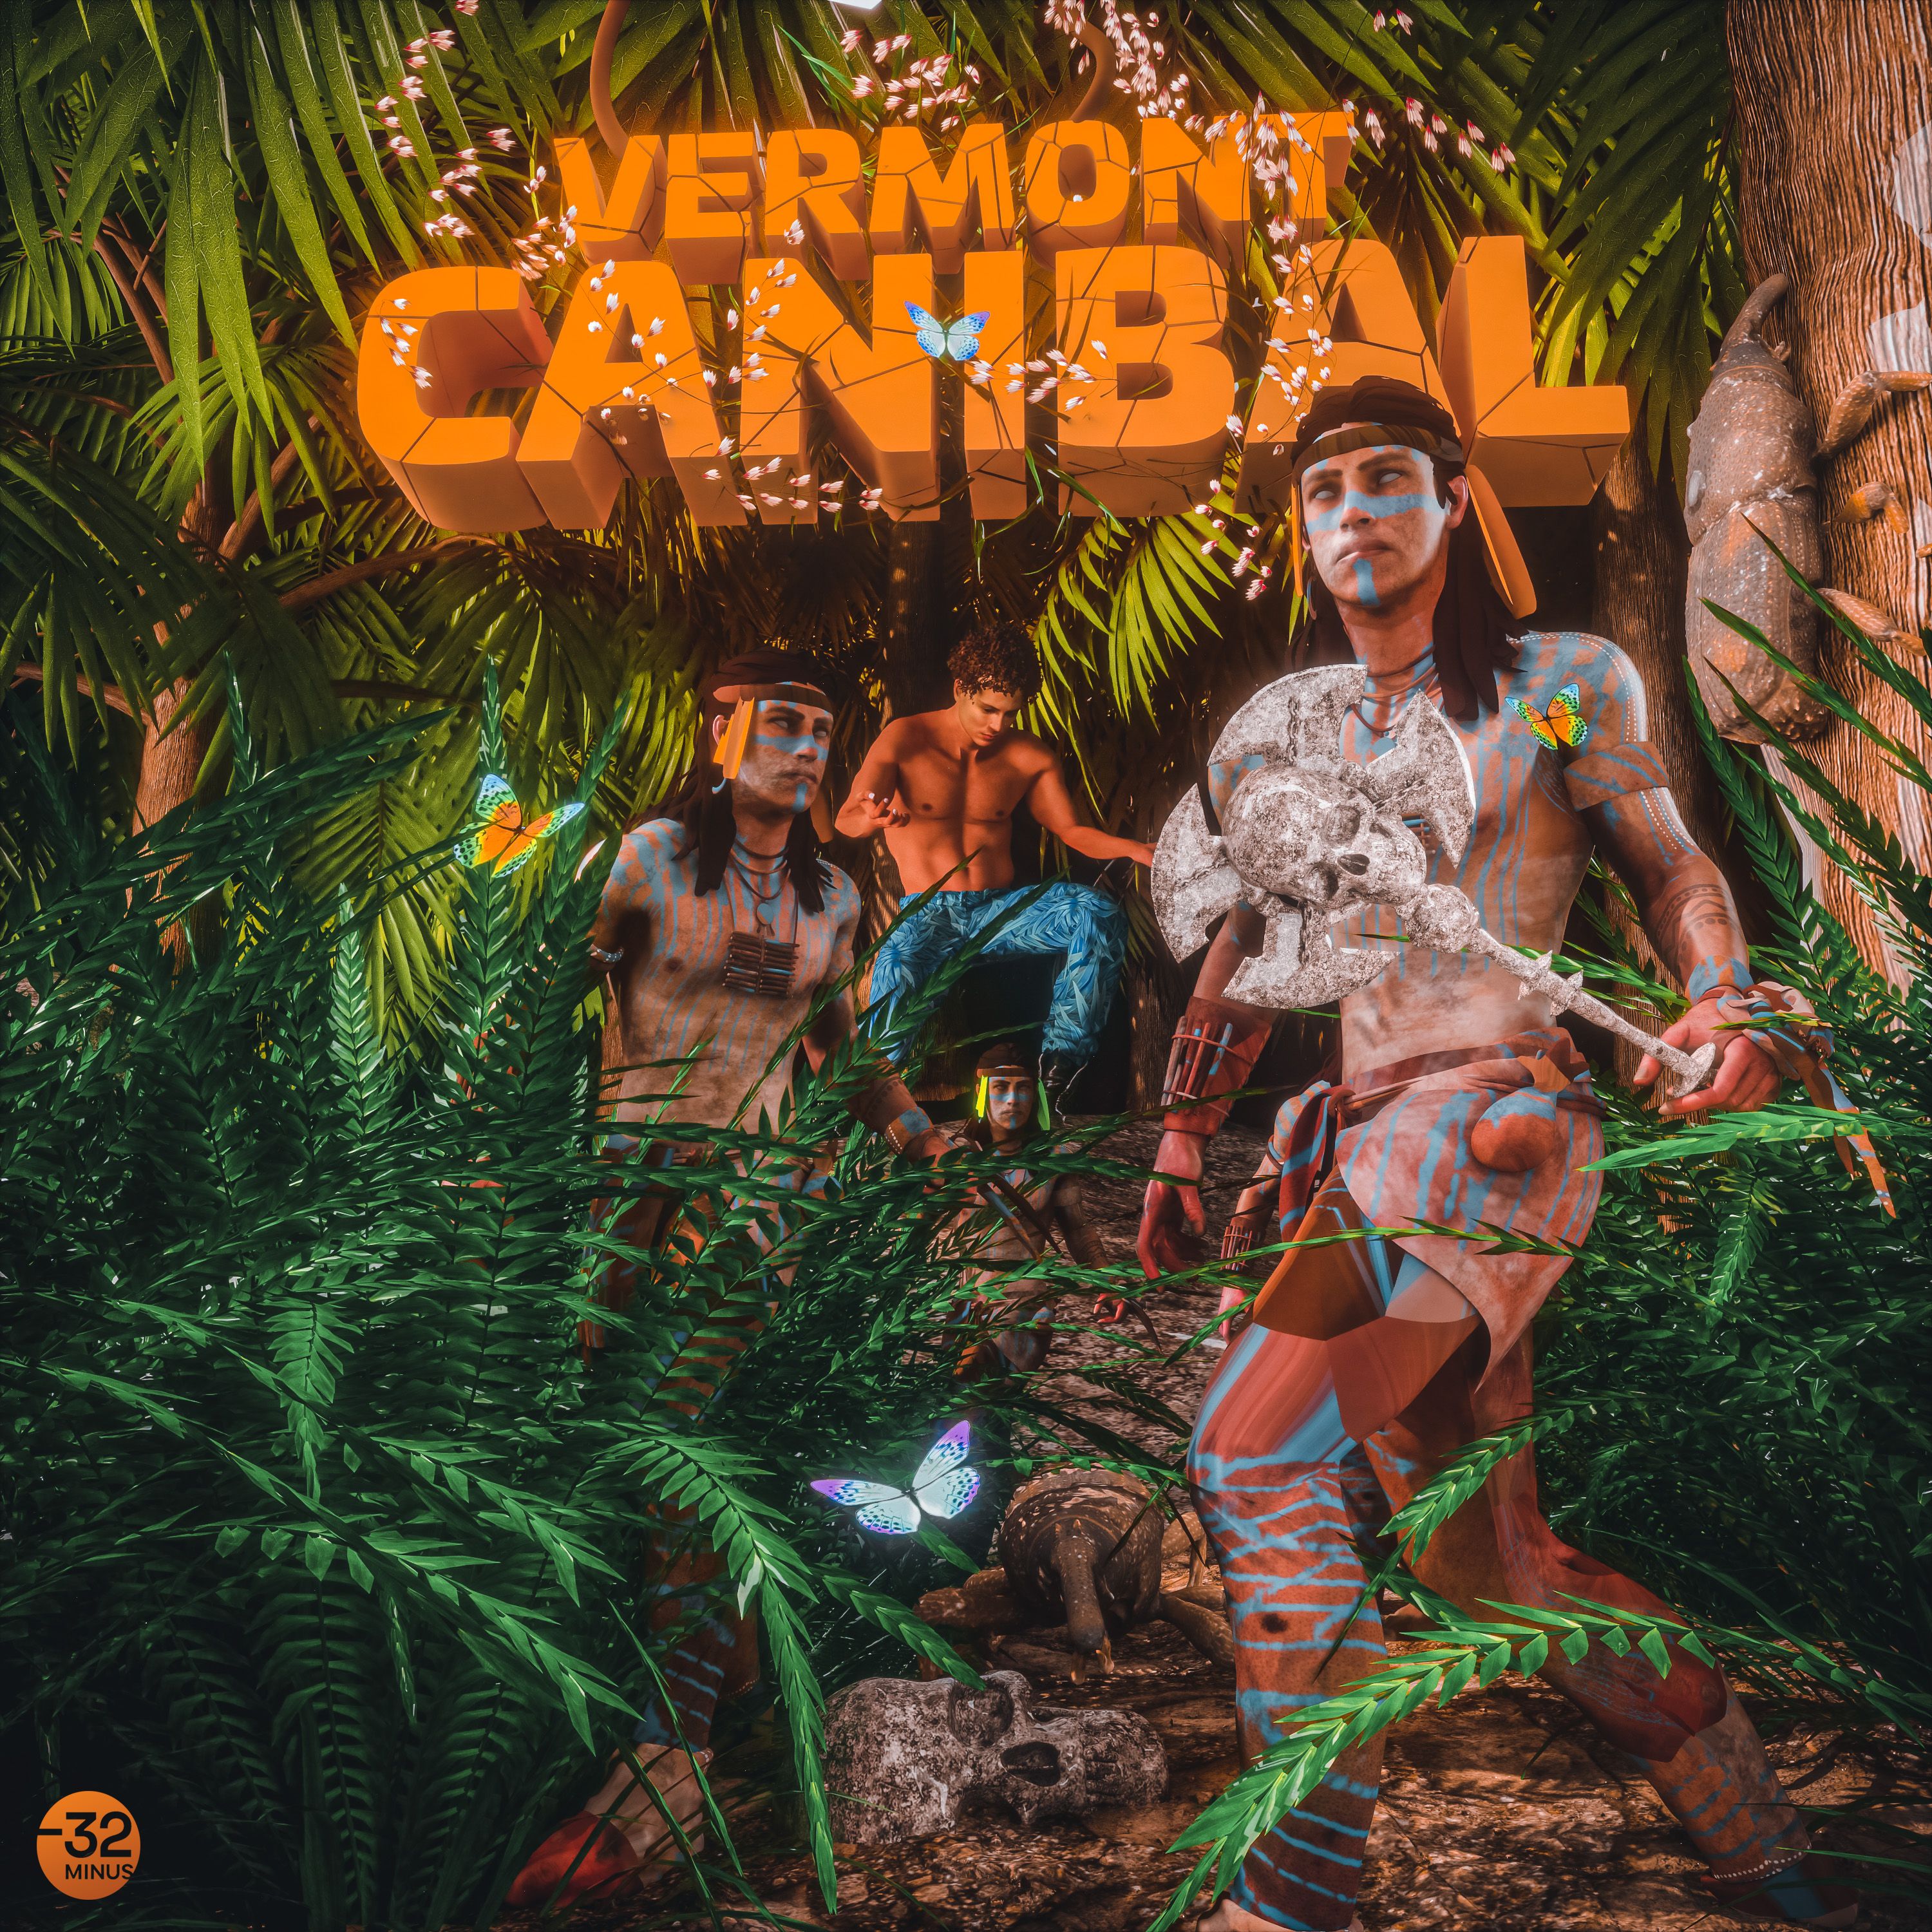 Dhawunirodha Vermont - Canibal (Original Mix)